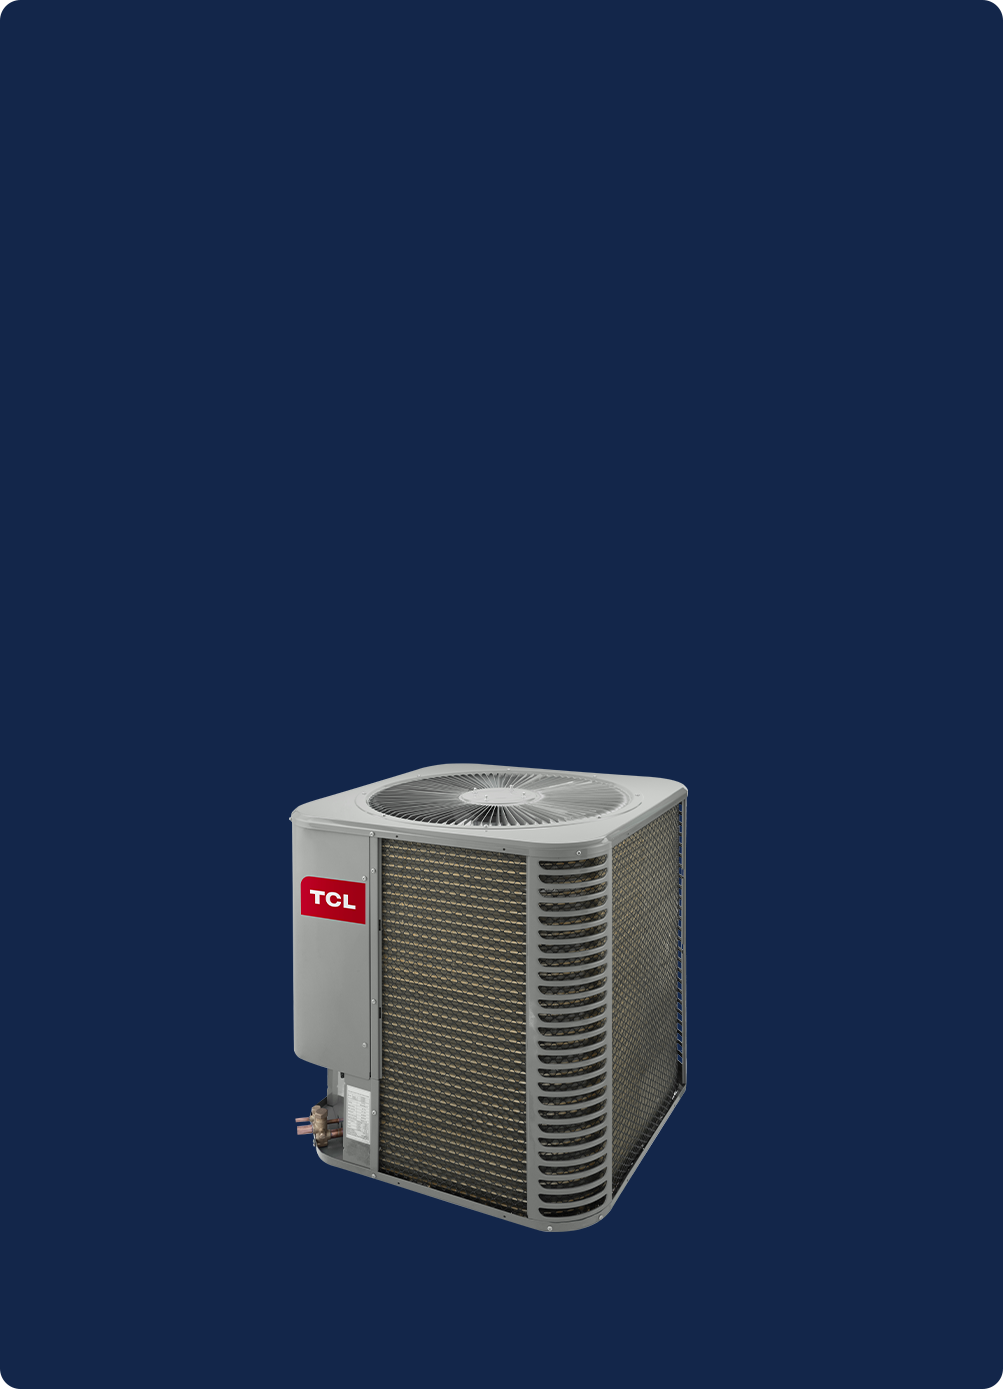 Imagem da condensadora mostrando sensores.